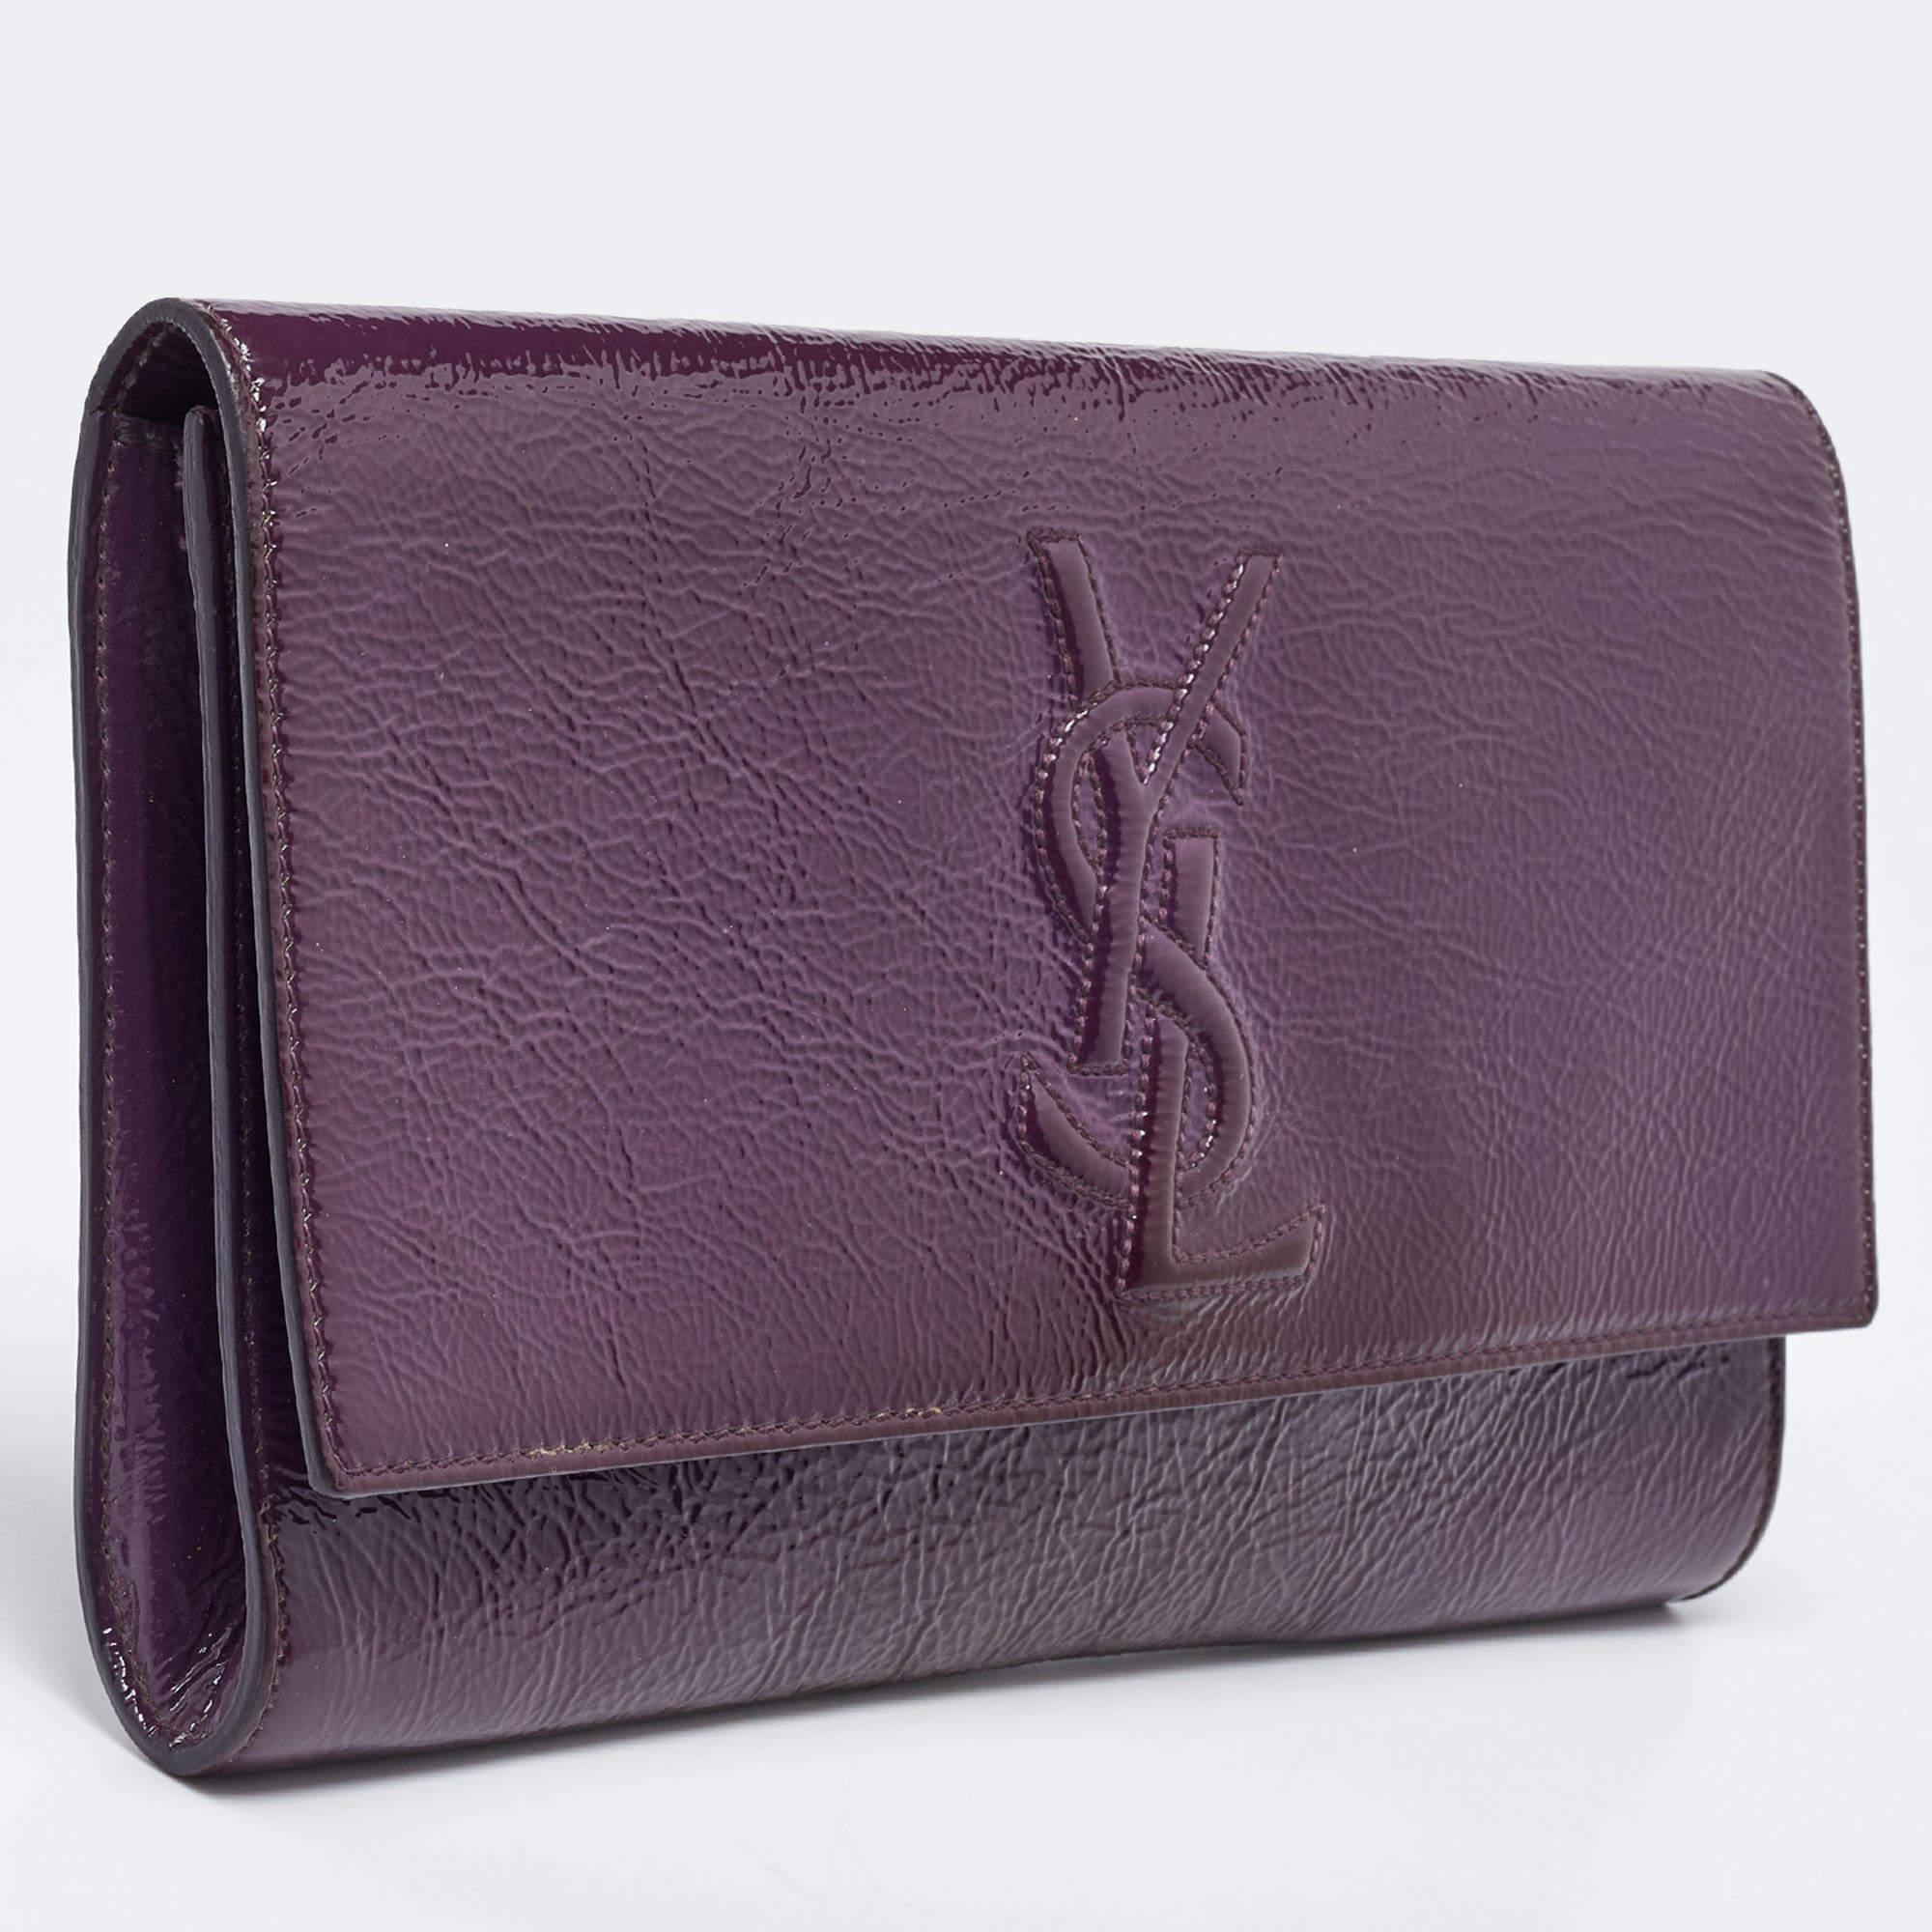 Yves Saint Laurent Purple Patent Leather Belle De Jour Flap Clutch For Sale 2